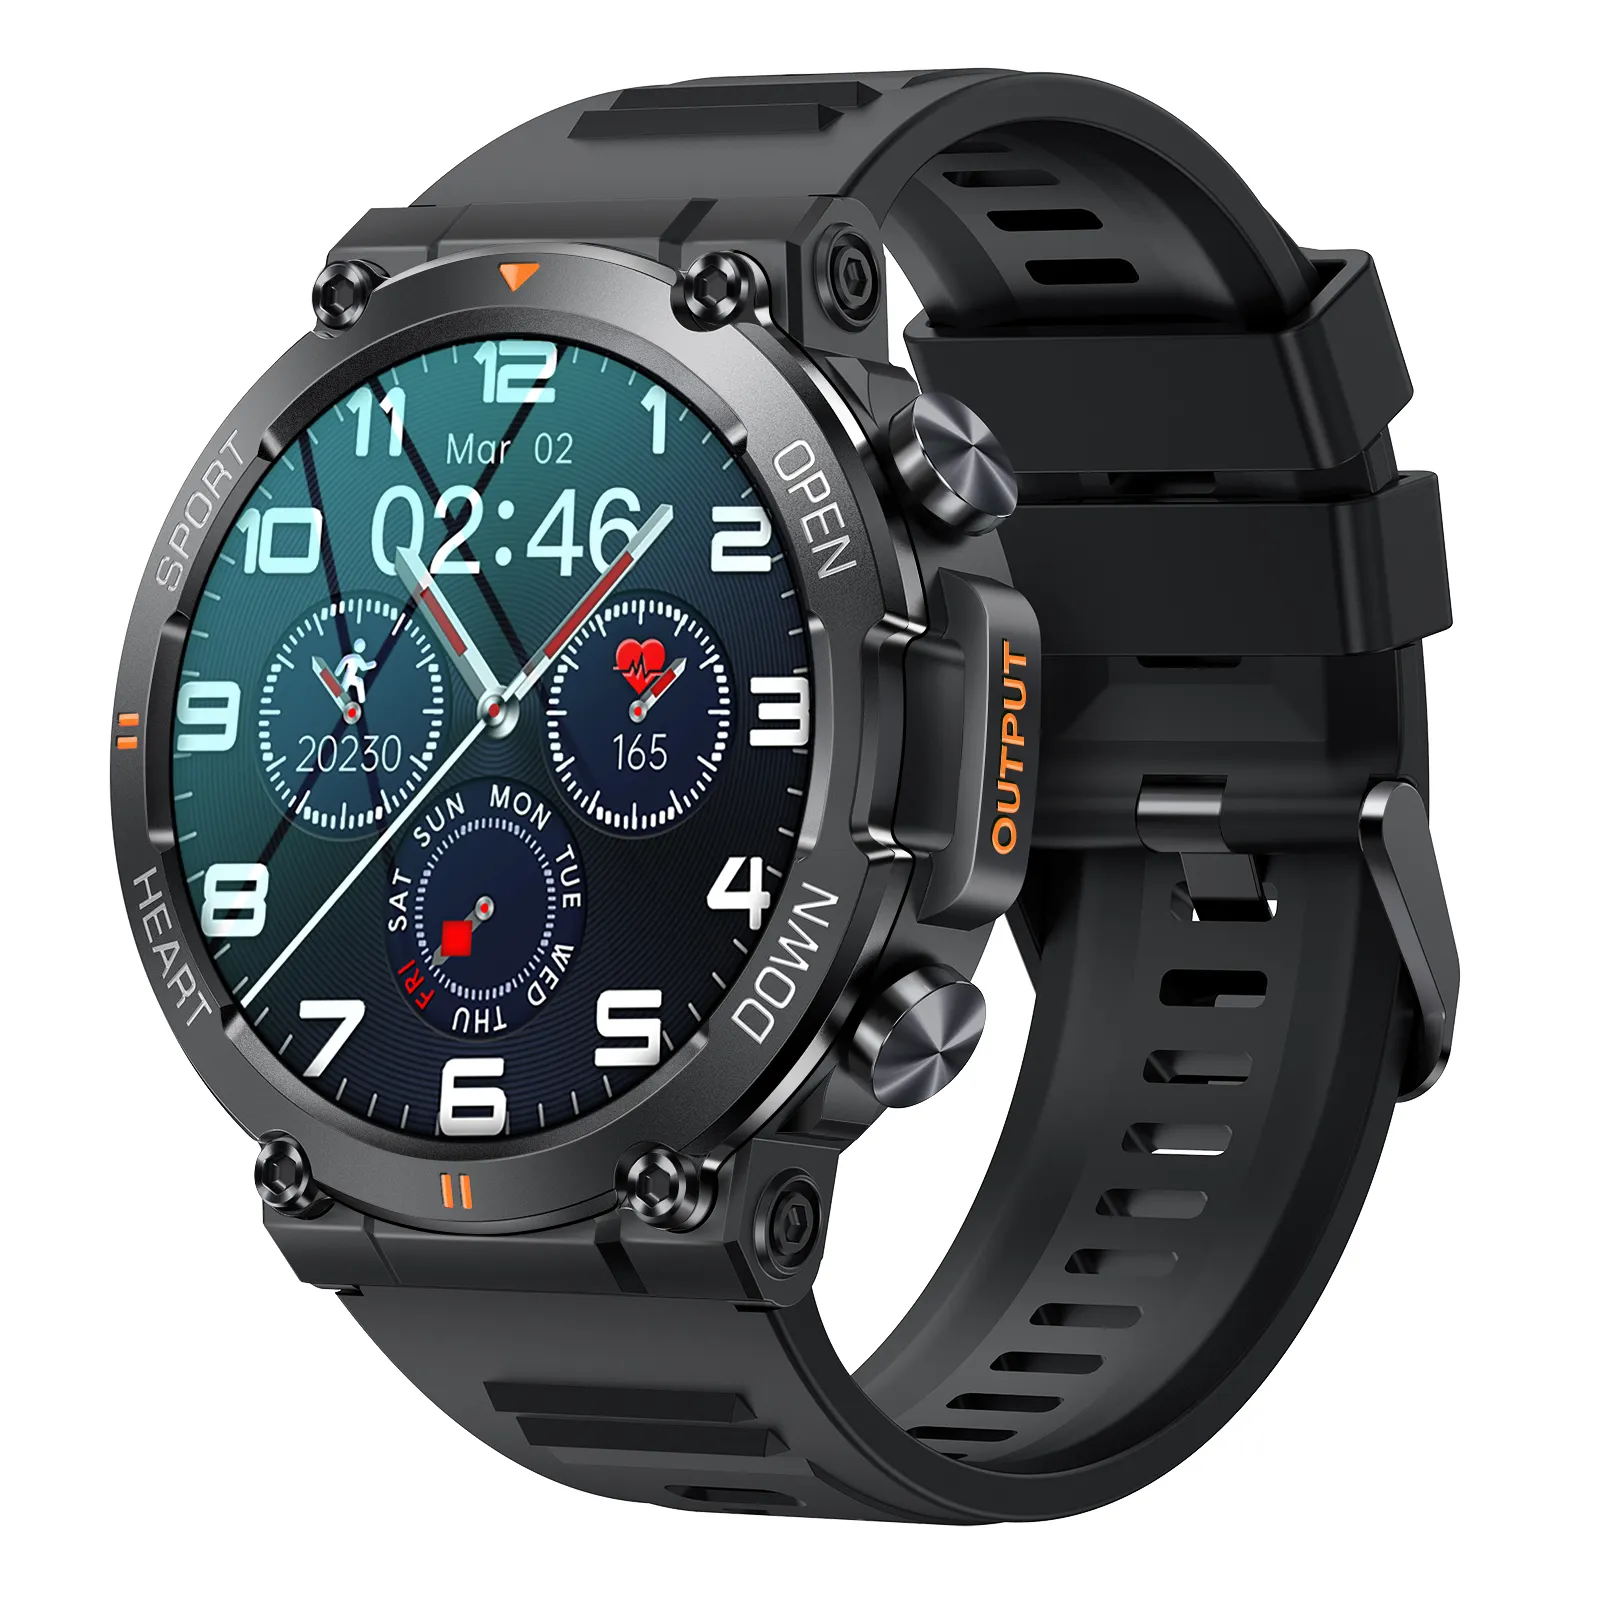 K56pro jam tangan pintar fungsi panggilan 1.39 inci IPS layar bulat baterai 400mAh bluetooth jam tangan olahraga luar ruangan K56 Pro jam tangan pintar